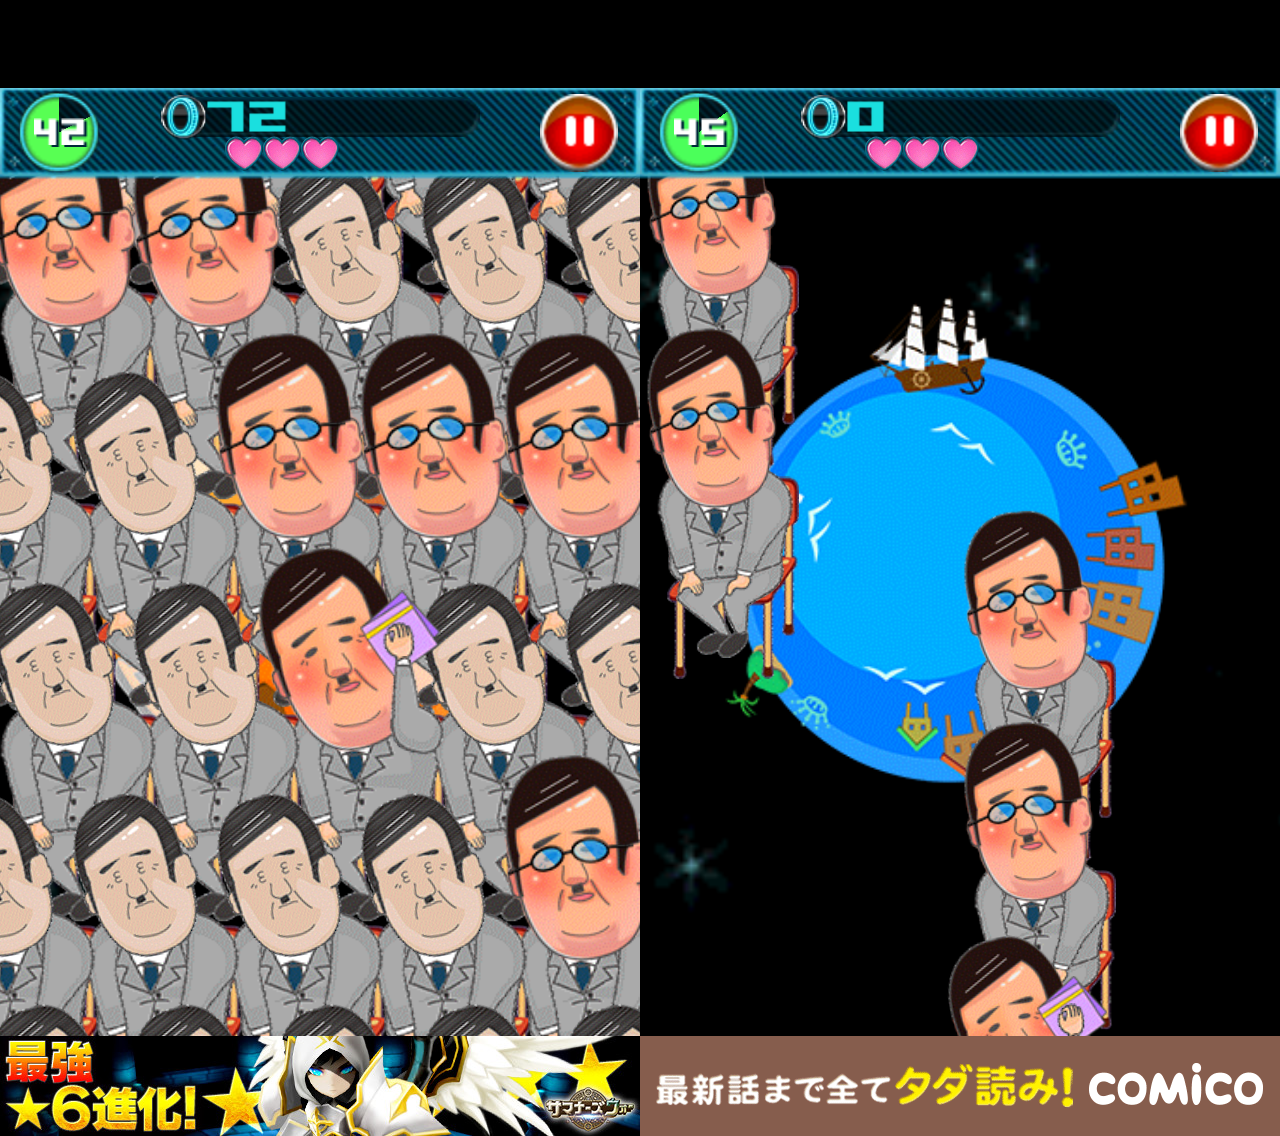 おやぢサミット〜おやじのメガネを割って爽快暇つぶしゲーム〜 androidアプリスクリーンショット3